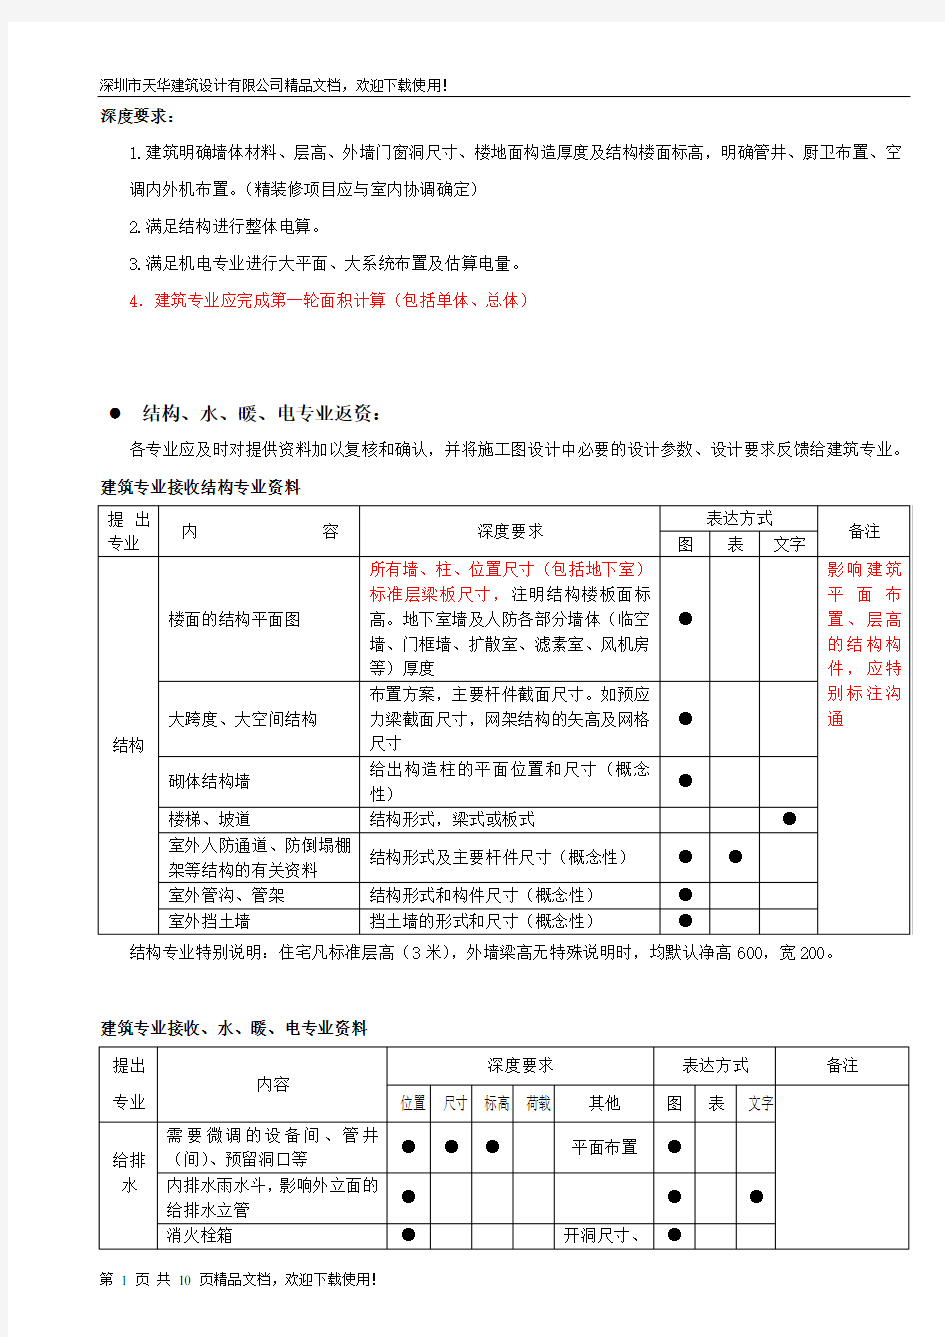 105-施工图设计提资深度规定(深圳)-XXXX1104